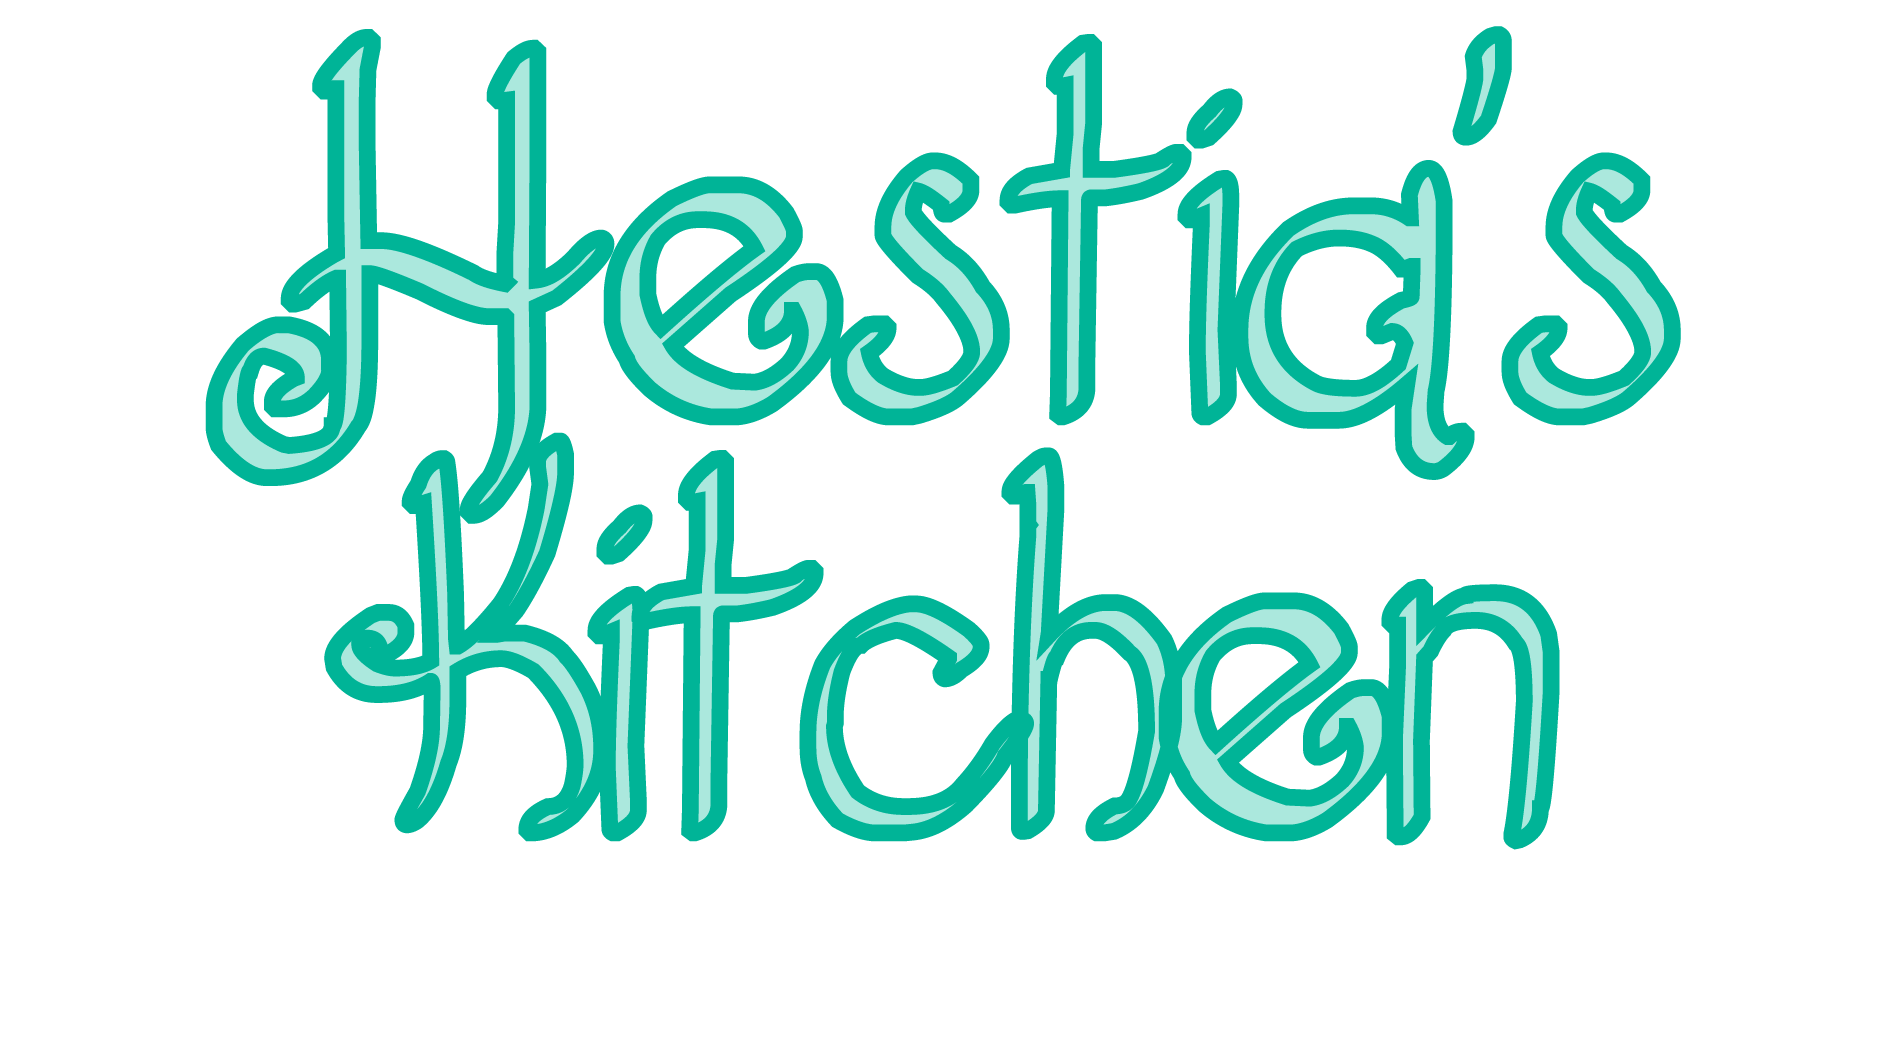 Hestia's Kitchen